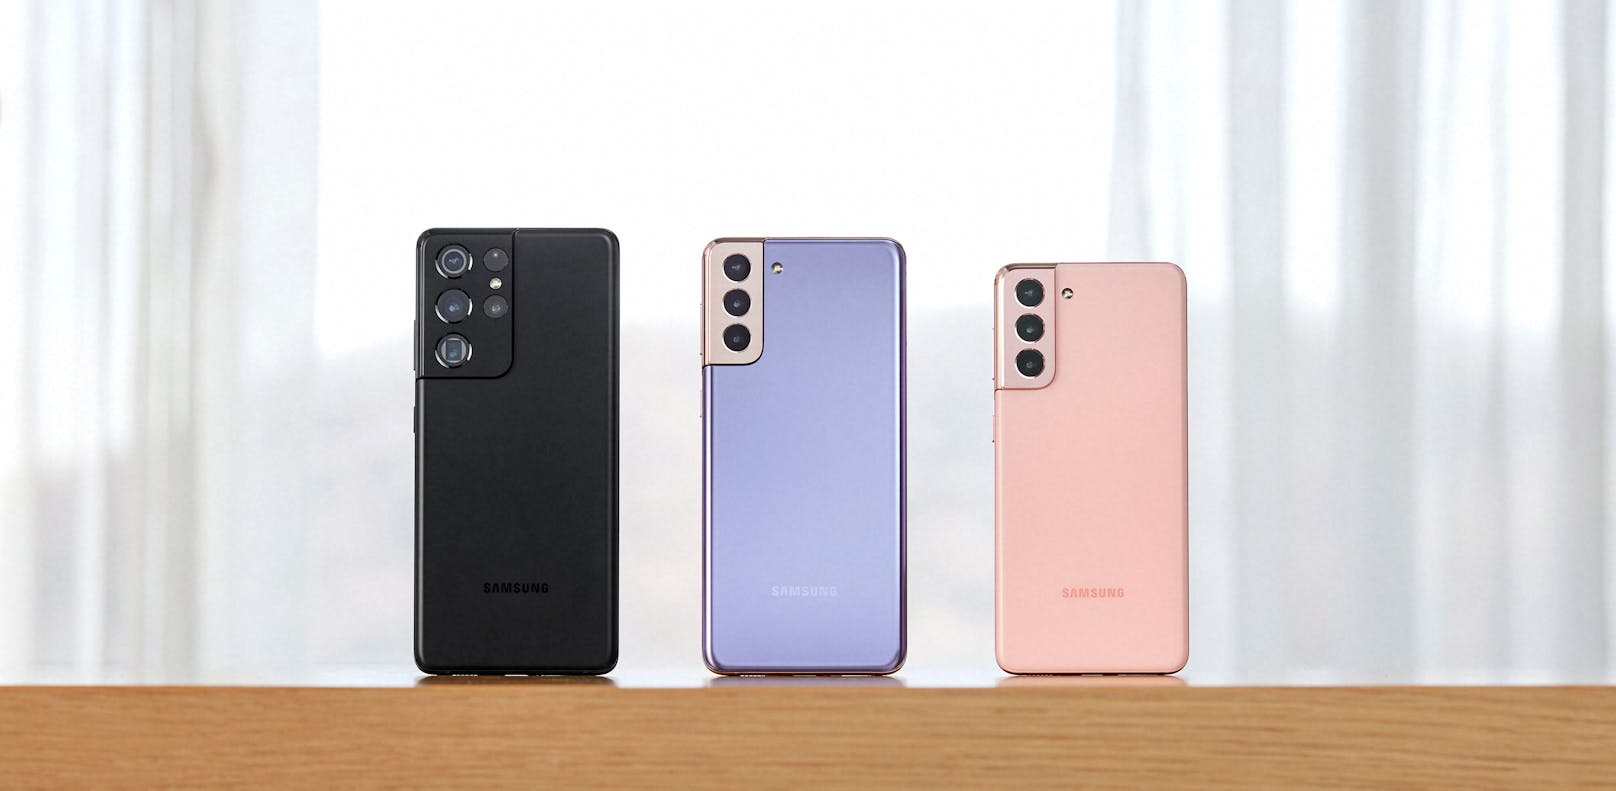 Für eine bessere und schnellere Konnektivität ist das Galaxy S21 Ultra das erste Smartphone, das Wi-Fi 6E unterstützt. Der Akku ist 5.000 mAh groß, verbessert worden sein soll die Schnellladung.